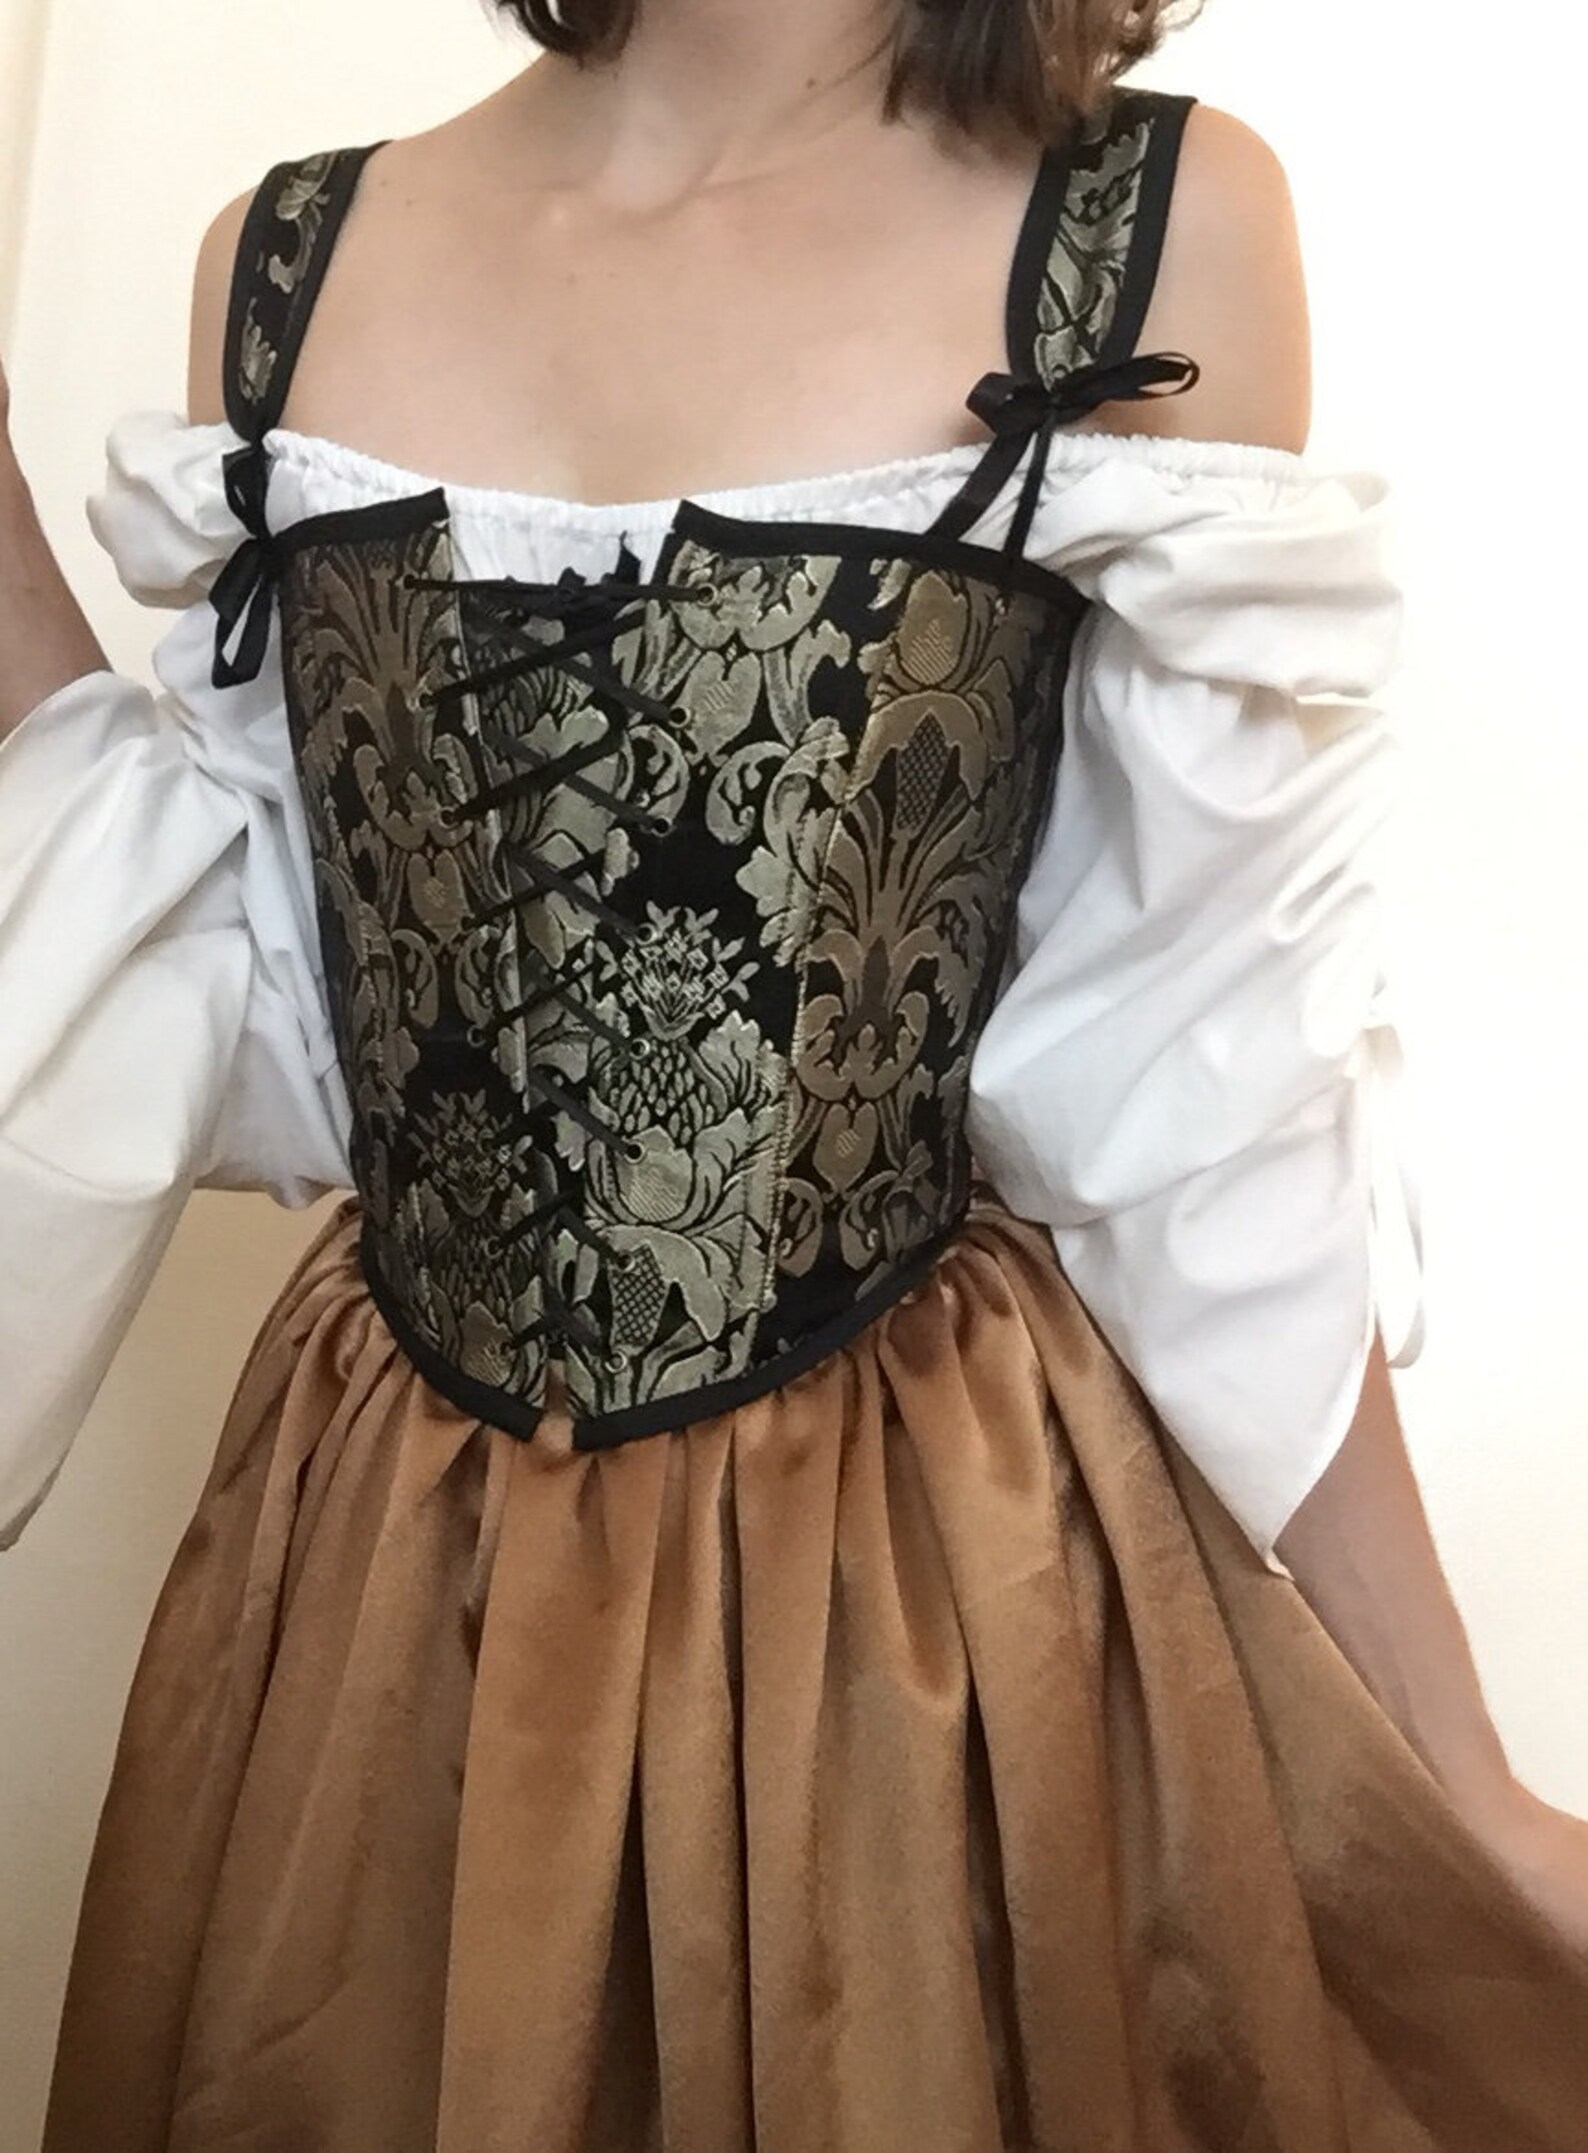 Renaissance corset dresses